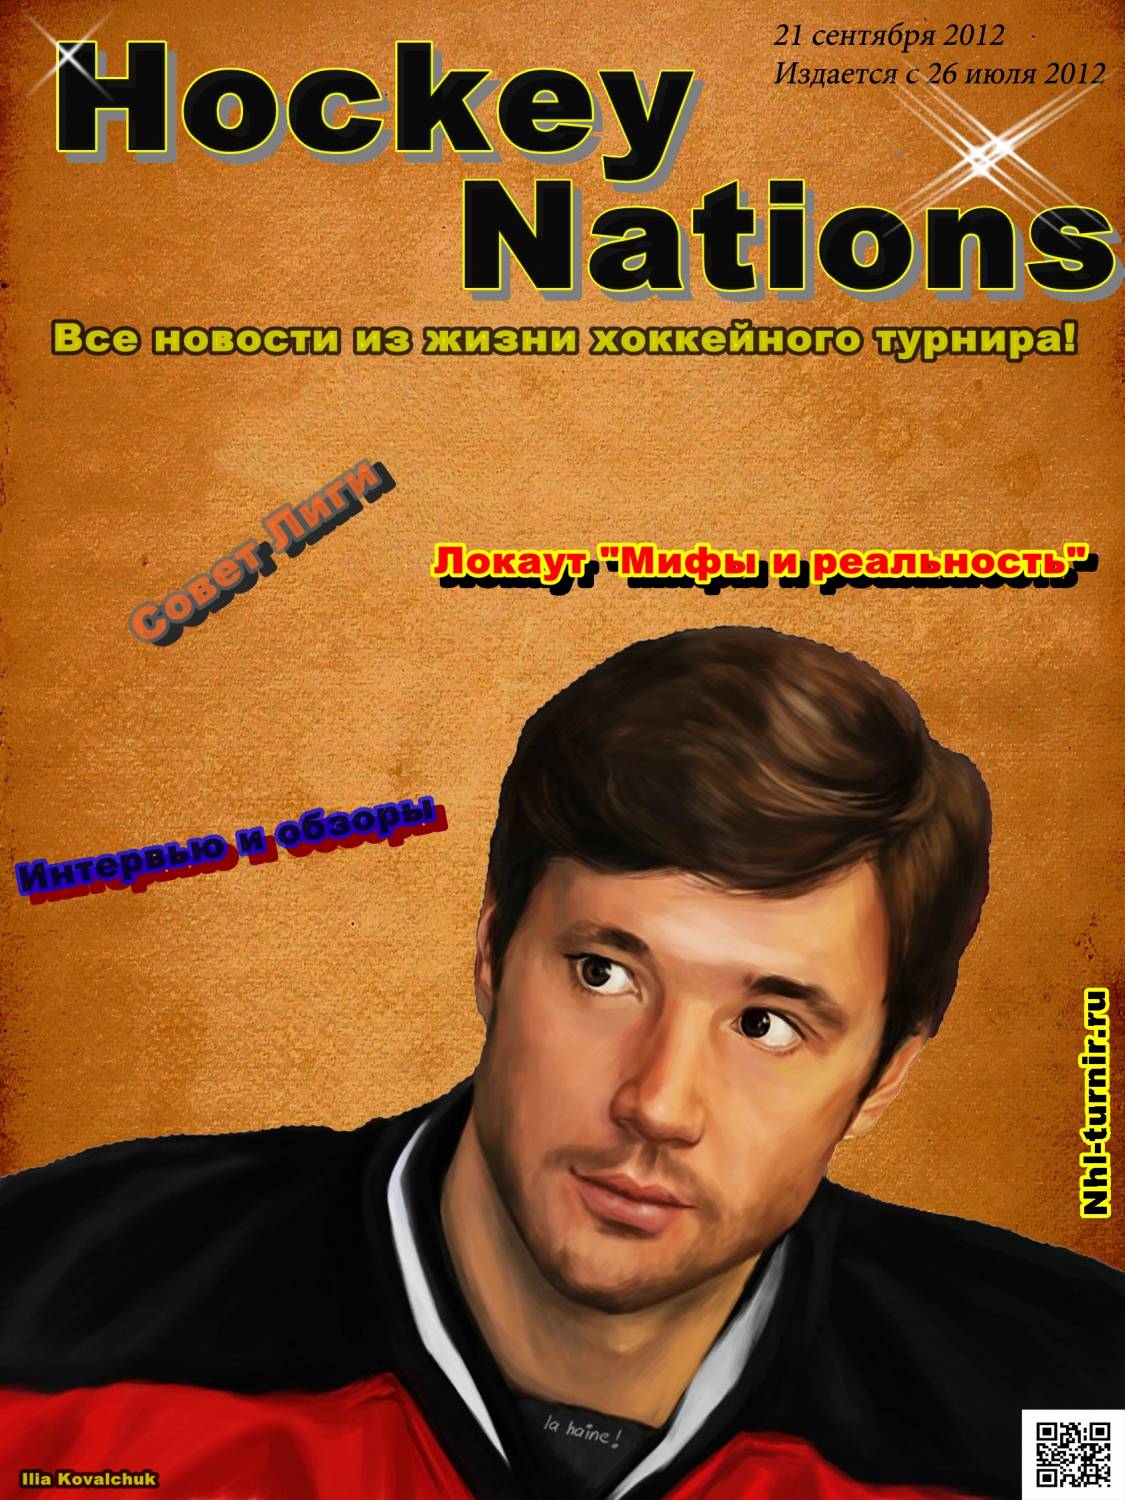 Превью нового выпуска Hockey Nations